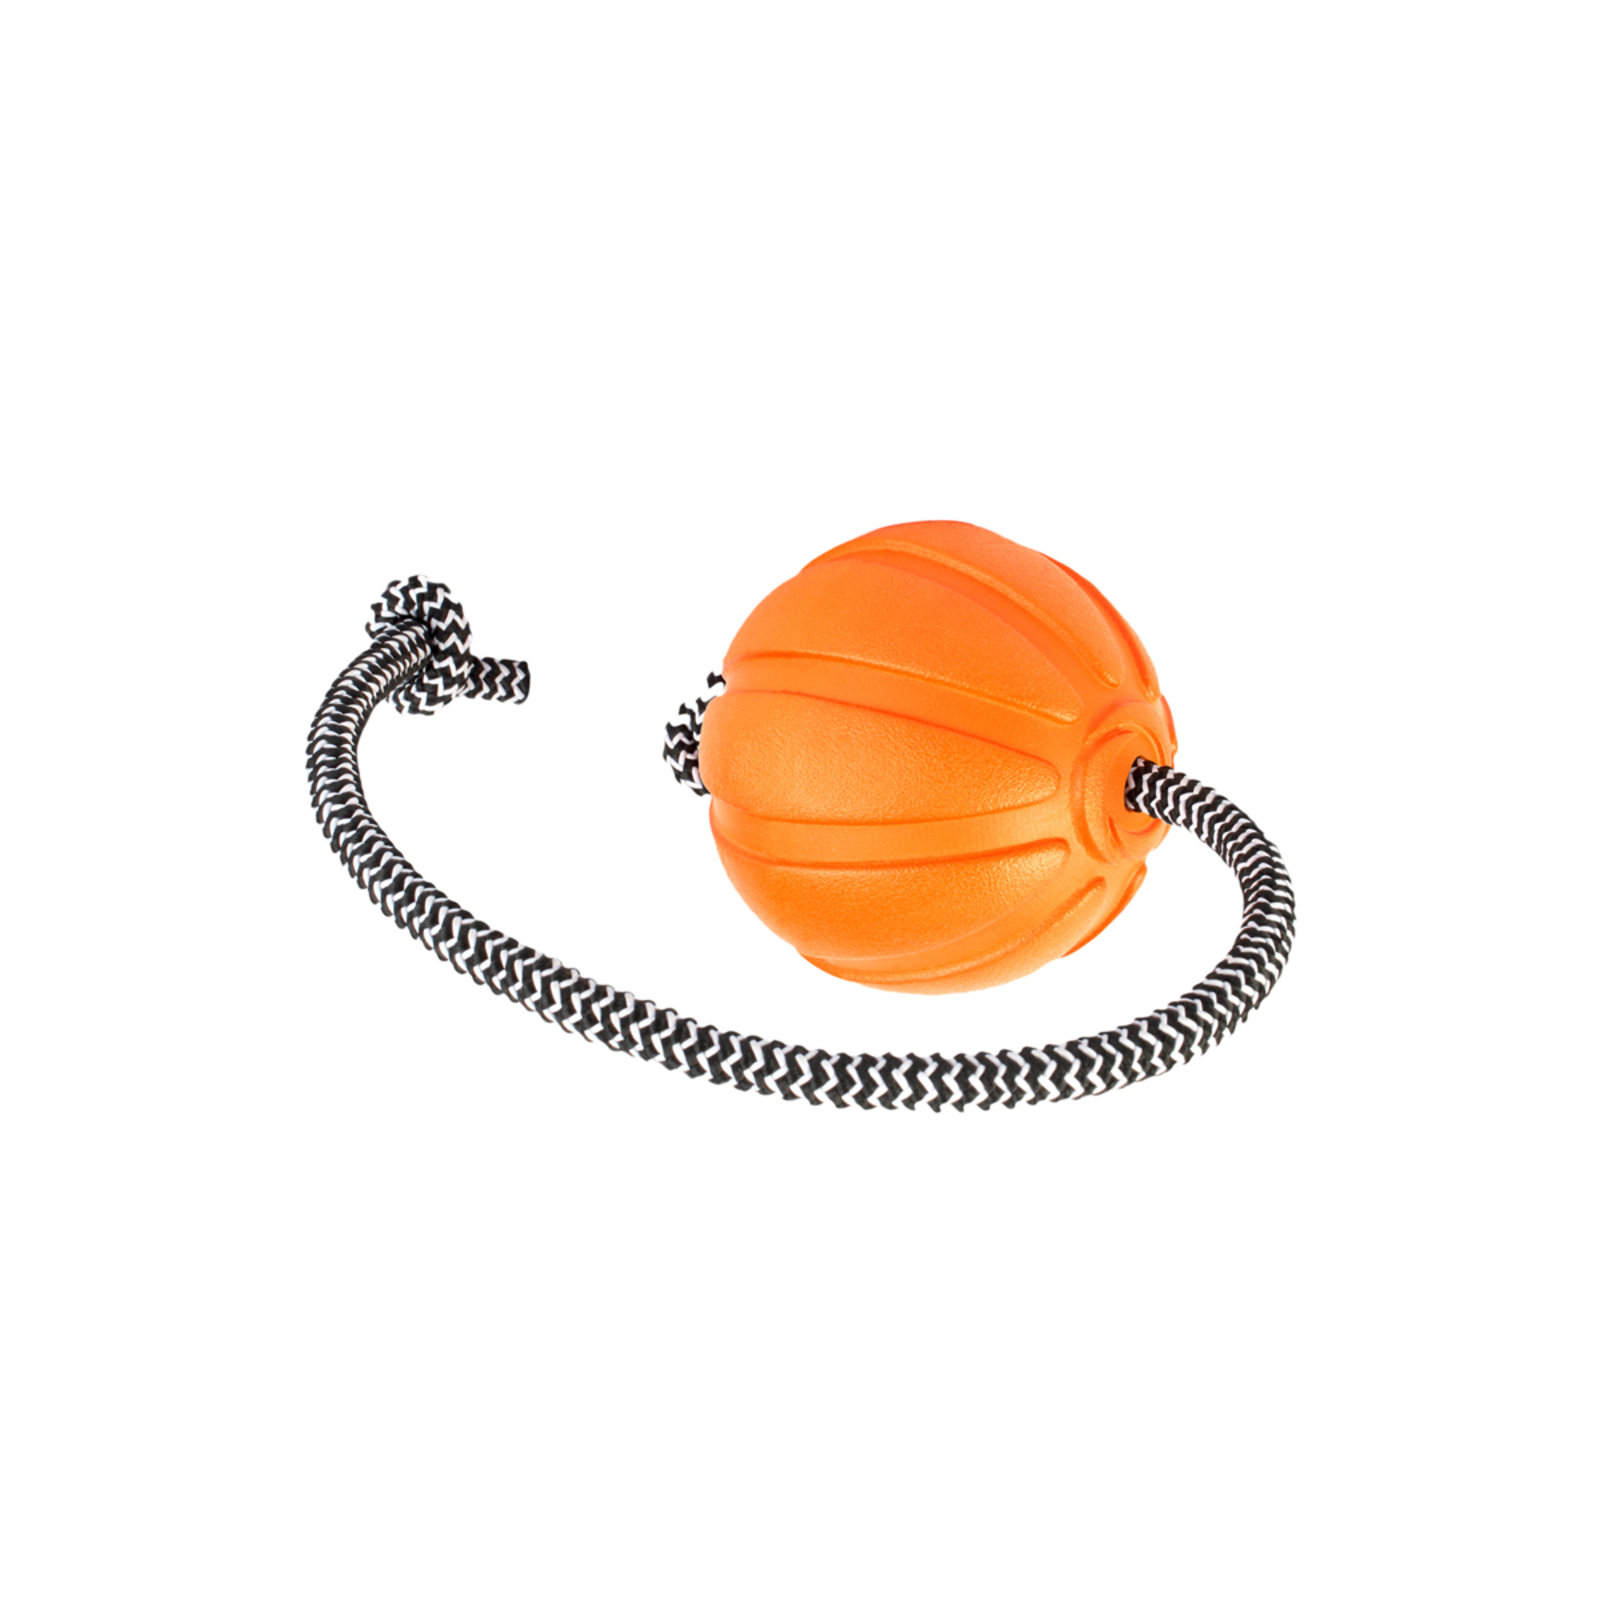 Игрушка для собак Liker Cord Мячик с веревкой 7 см (6296)